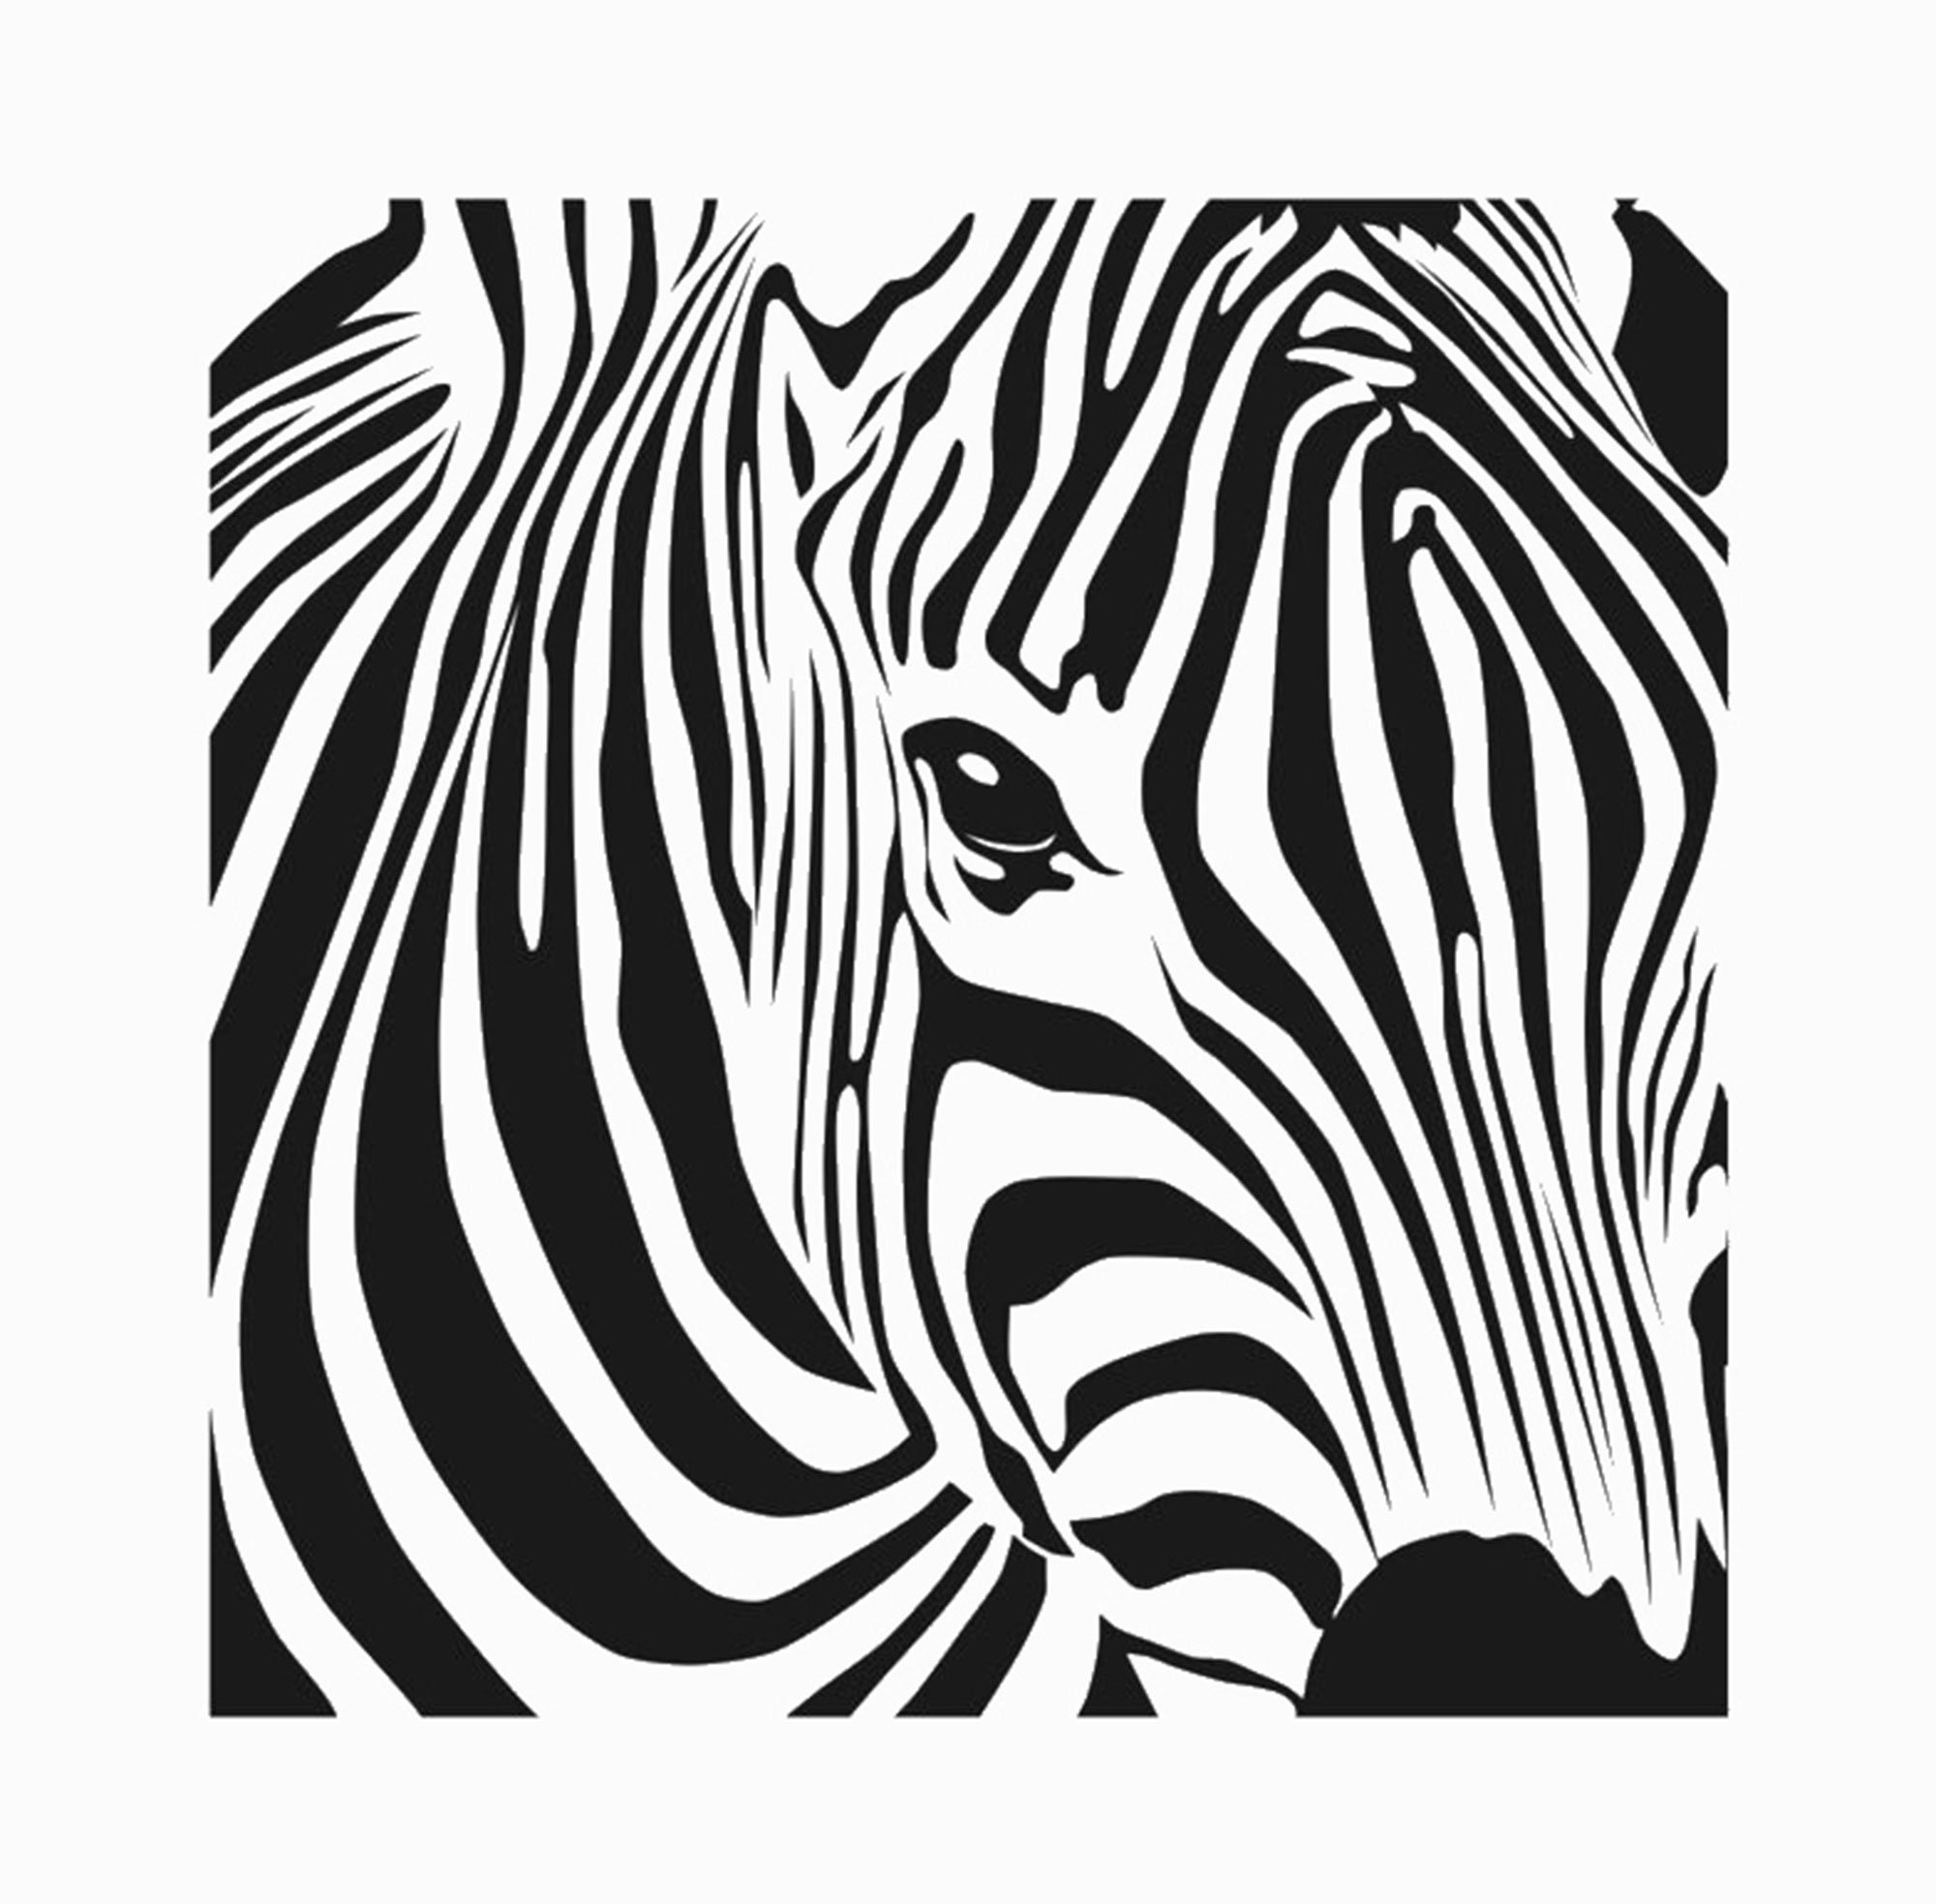 Parete stencil Zebra stencil grandi dimensioni modello per muro